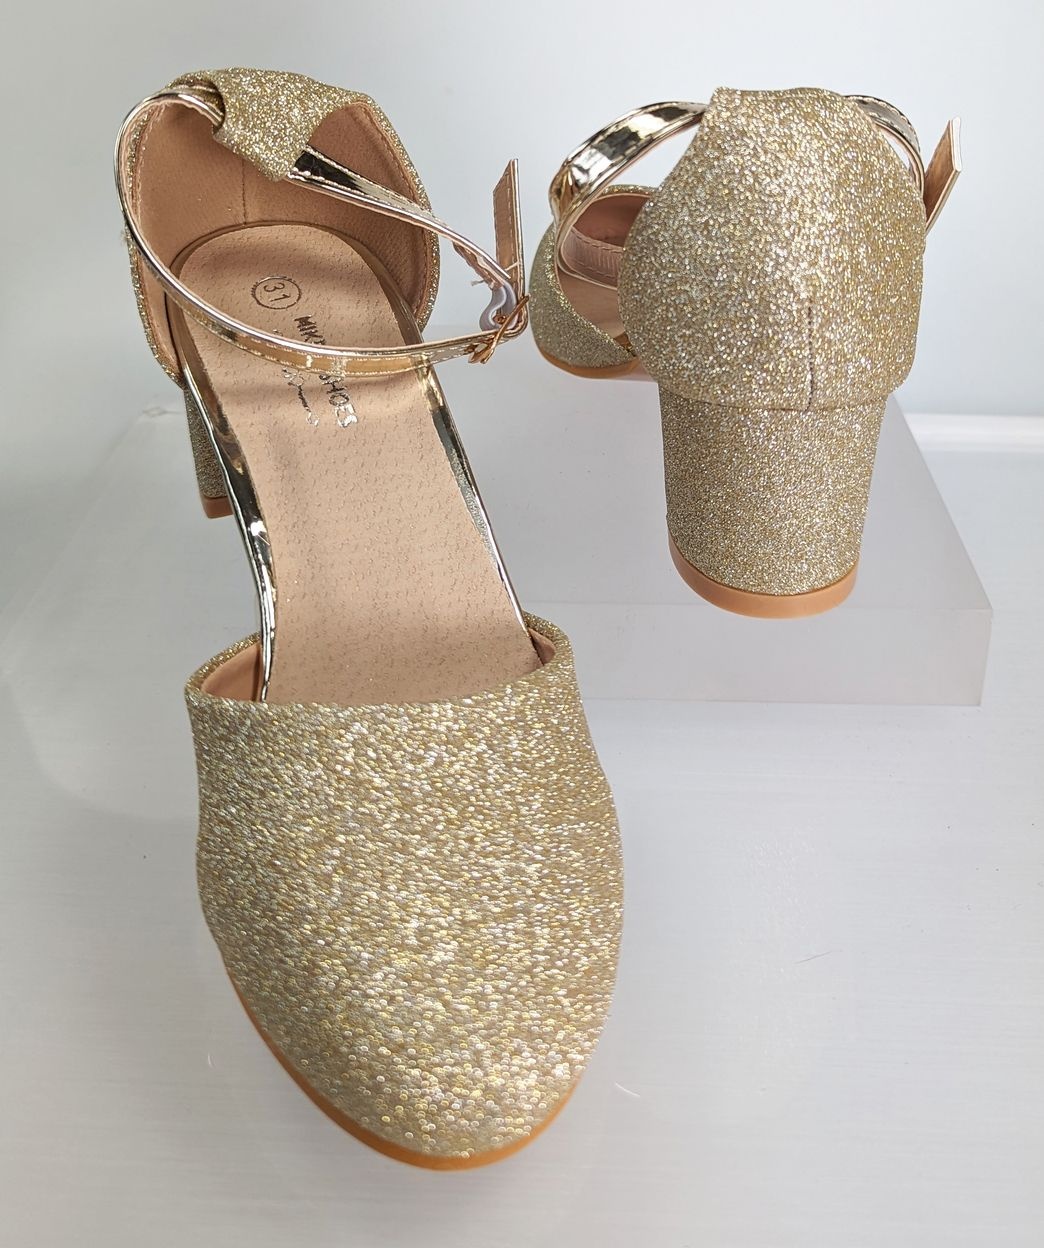 Meisjesschoenen Meisjesschoen - Spaanse schoentjes half open - glitters - goud - band glans